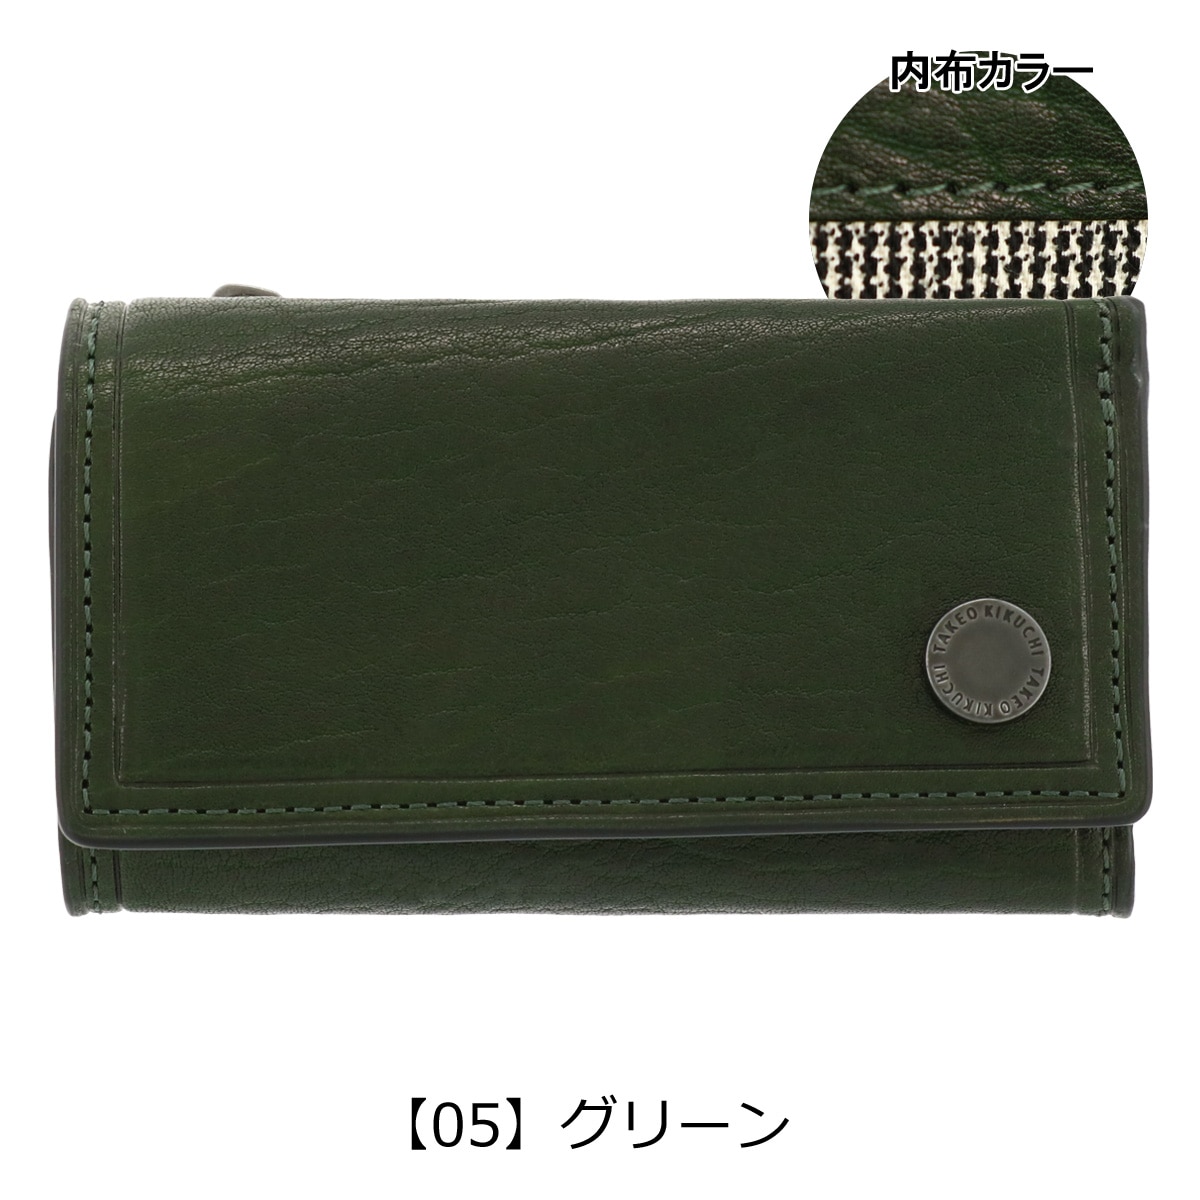 タケオキクチ キーケース 本革 コイン 730613 メンズ TAKEO KIKUCHI